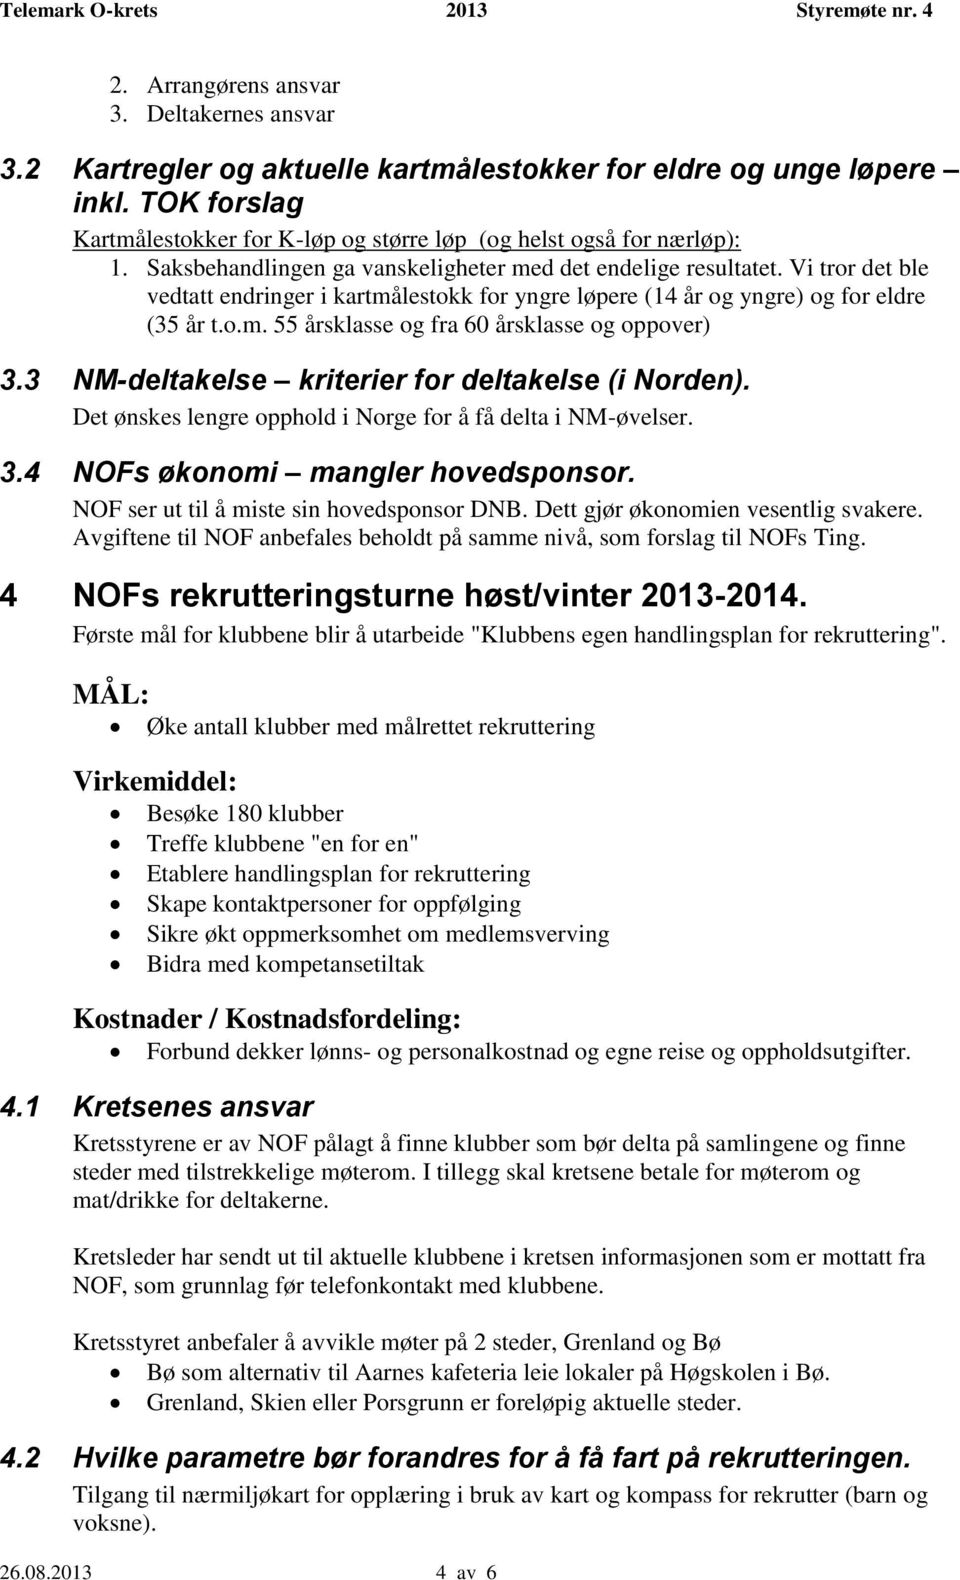 3 NM-deltakelse kriterier for deltakelse (i Norden). Det ønskes lengre opphold i Norge for å få delta i NM-øvelser. 3.4 NOFs økonomi mangler hovedsponsor. NOF ser ut til å miste sin hovedsponsor DNB.